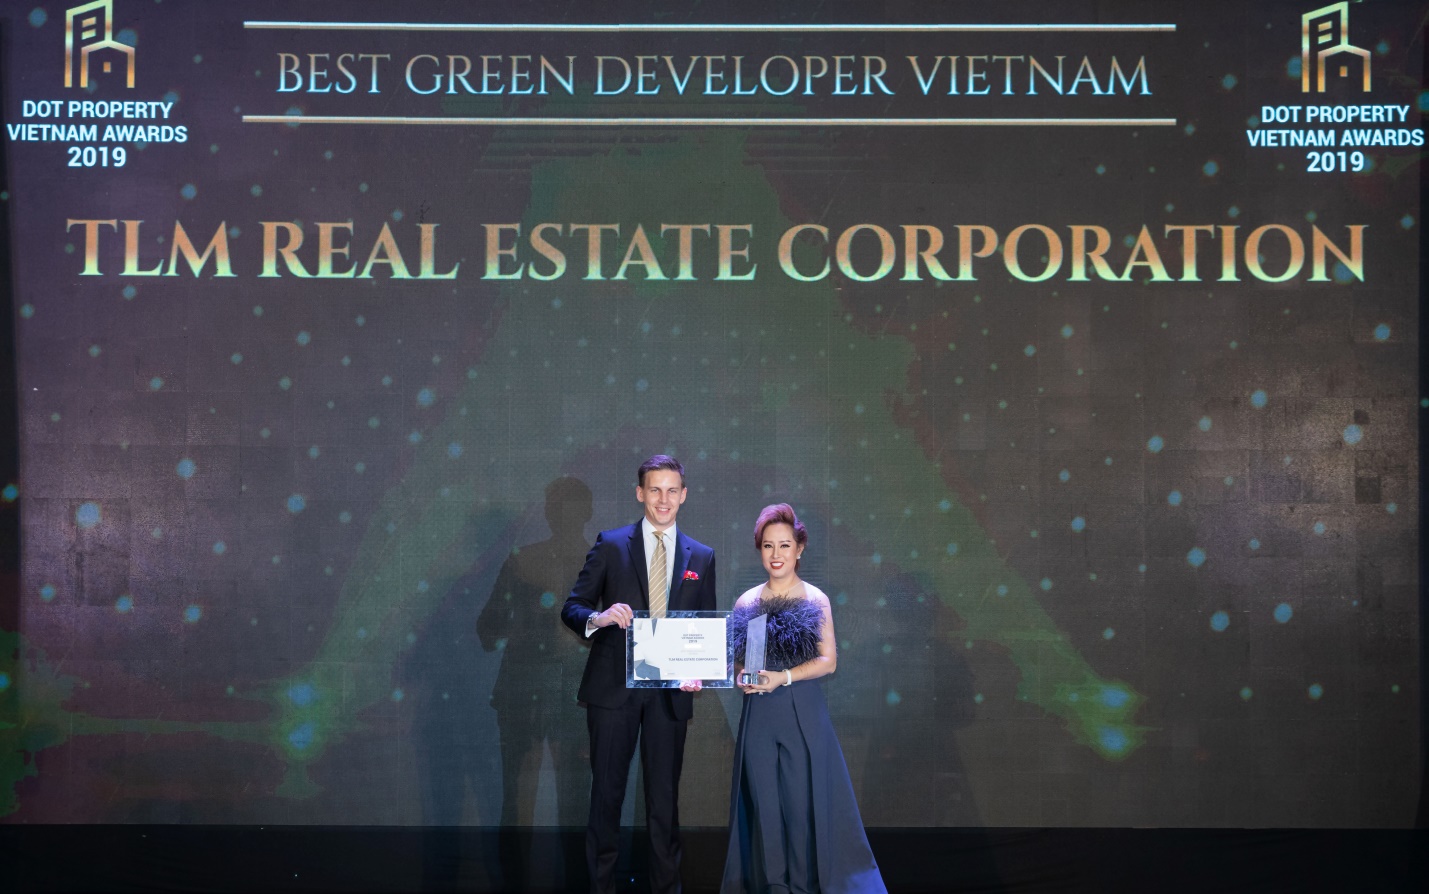 Tập đoàn Bất động sản TLM đạt cú đúp giải thưởng tại Dot Property Vietnam Awards 2019